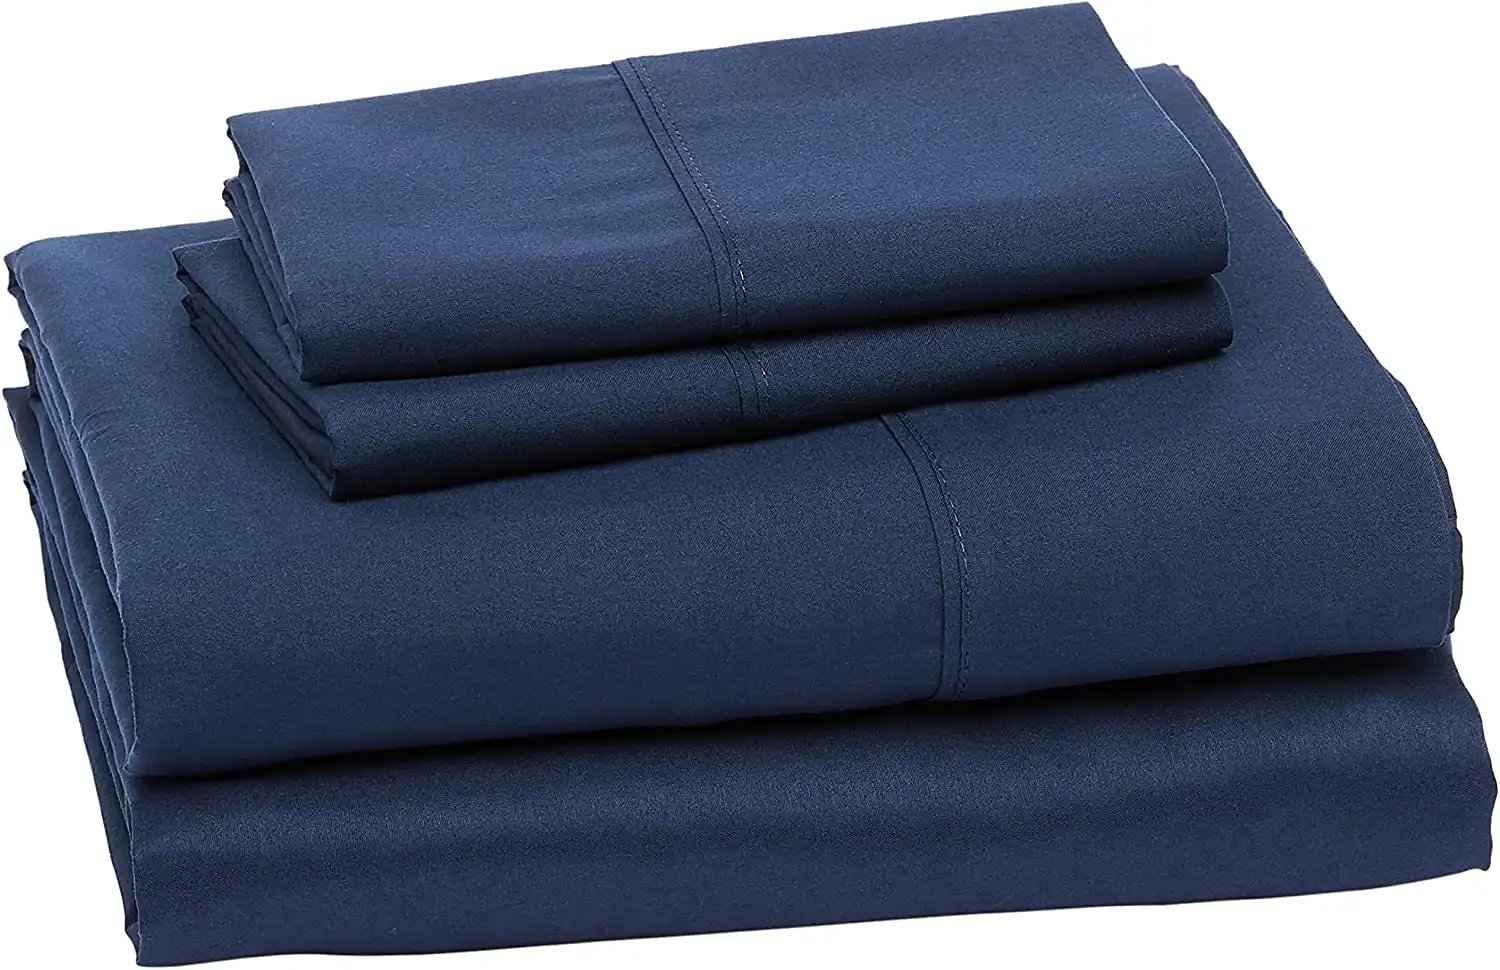 King Size Navy Blue Microfiber Bed Sheet Set, Lightweight Super Soft Easy Care, 36cm Deep Pockets